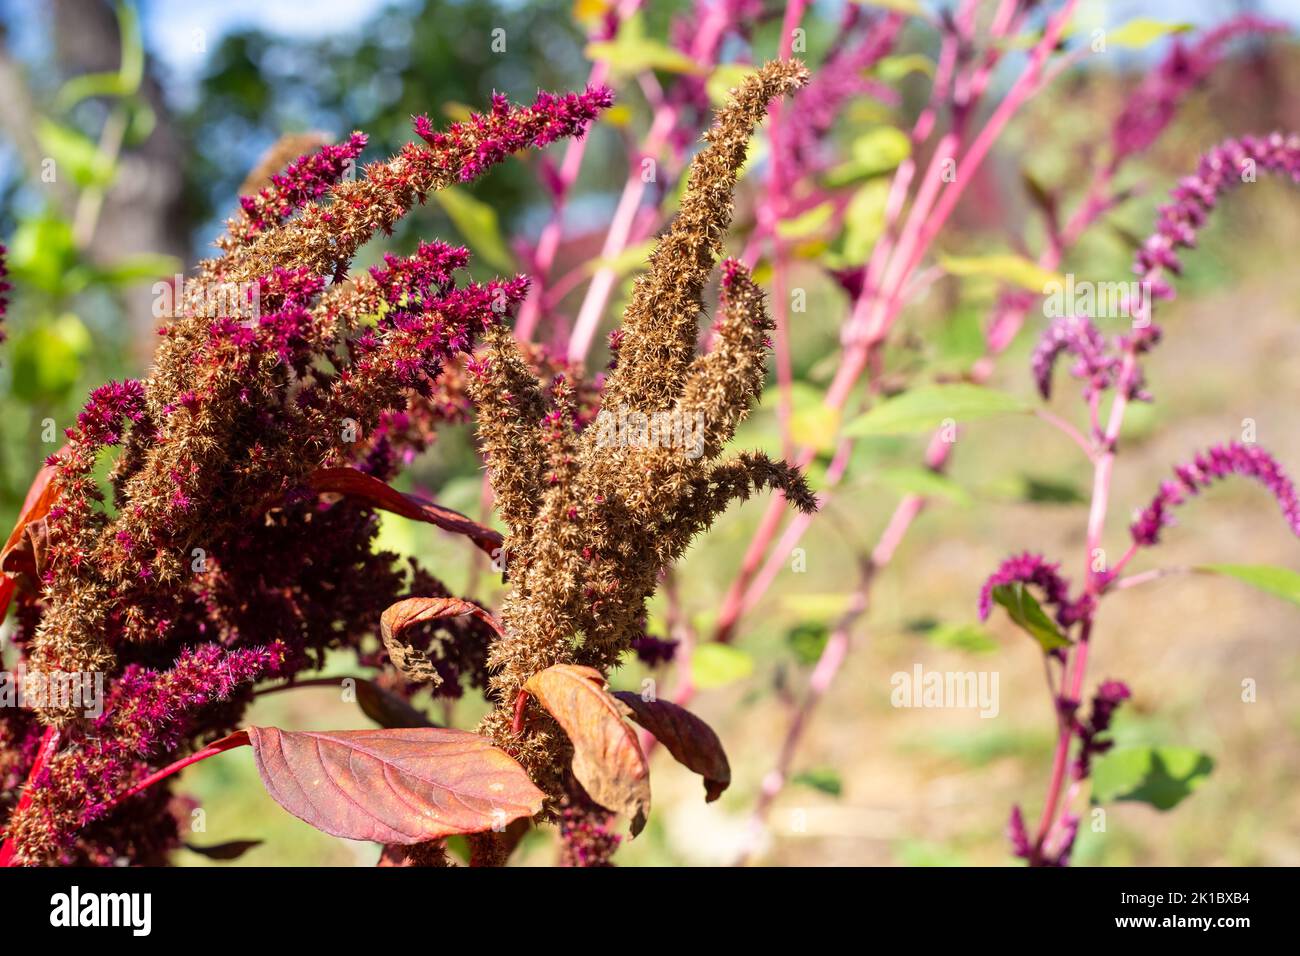 Semillas de amaranto vegetal rojo en una rama vegetal. Cultivo de una planta ornamental de jardín brillante. Foto de stock